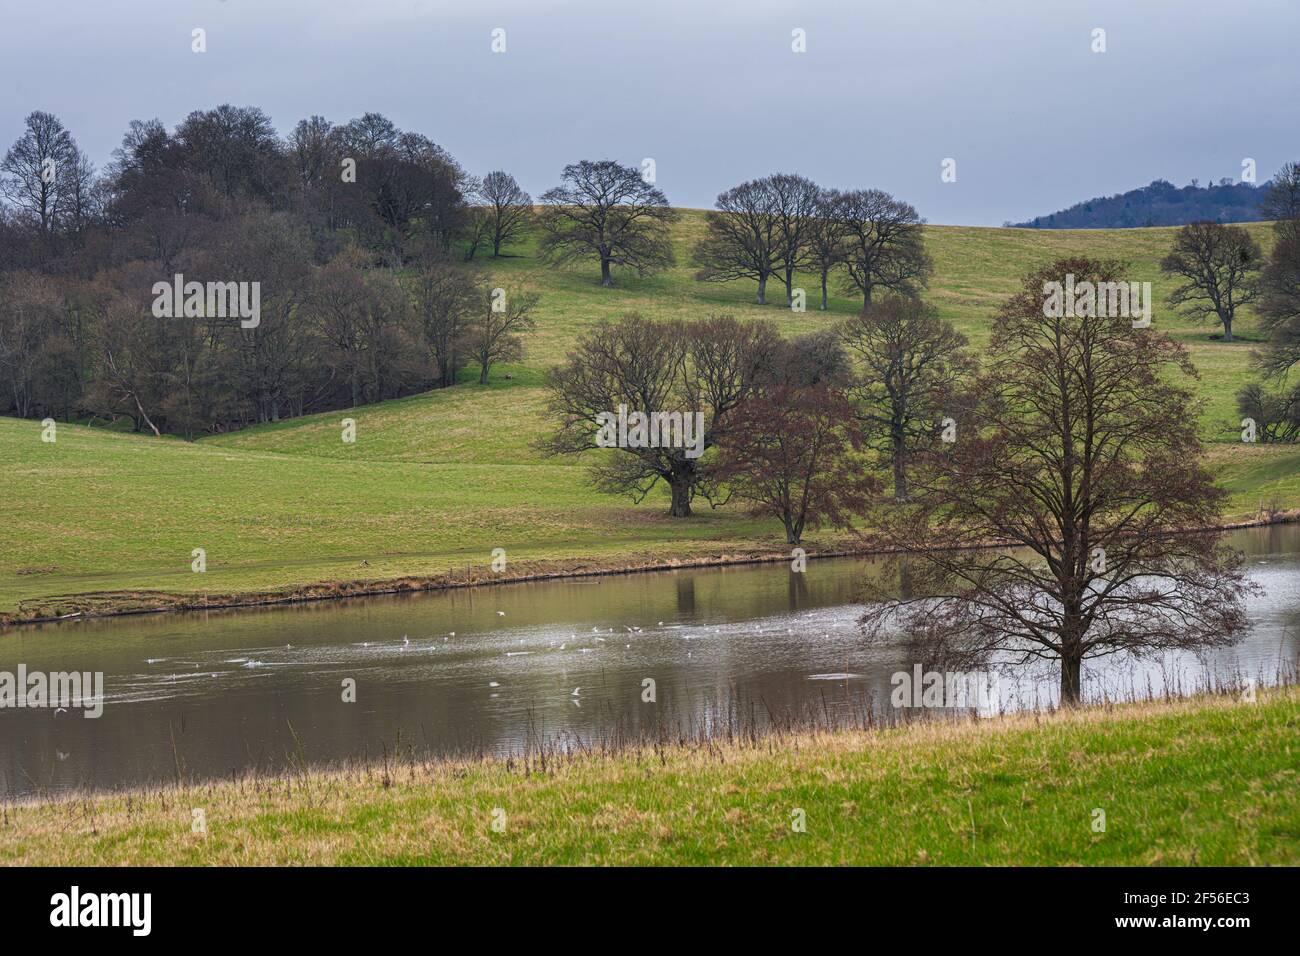 De beaux arbres s'arient sur un lac près de Wadhurst, dans le sud-est de l'Angleterre, au début du printemps Banque D'Images